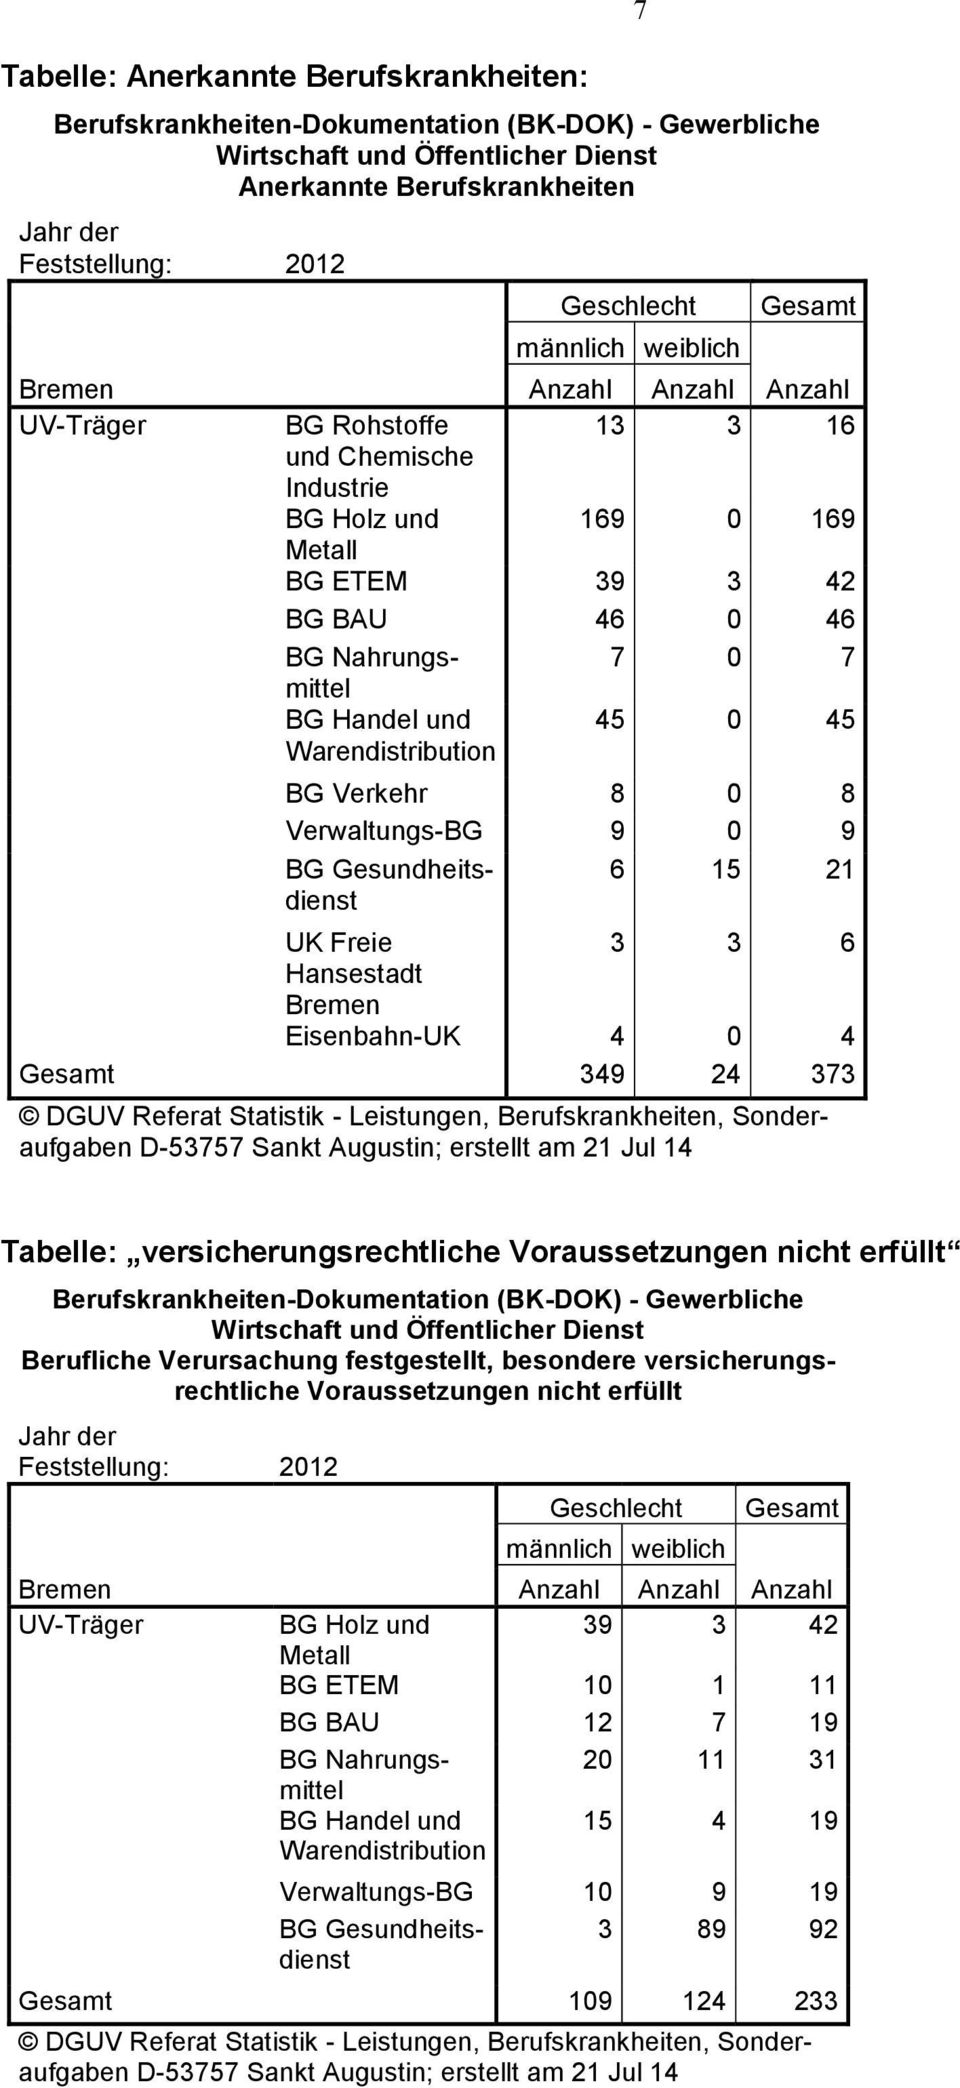 Freie 3 3 6 Hansestadt Eisenbahn-UK 4 0 4 Gesamt 349 24 373 DGUV Referat Statistik - Leistungen, Berufskrankheiten, Sonderaufgaben D-53757 Sankt Augustin; erstellt am 21 Jul 14 Tabelle: